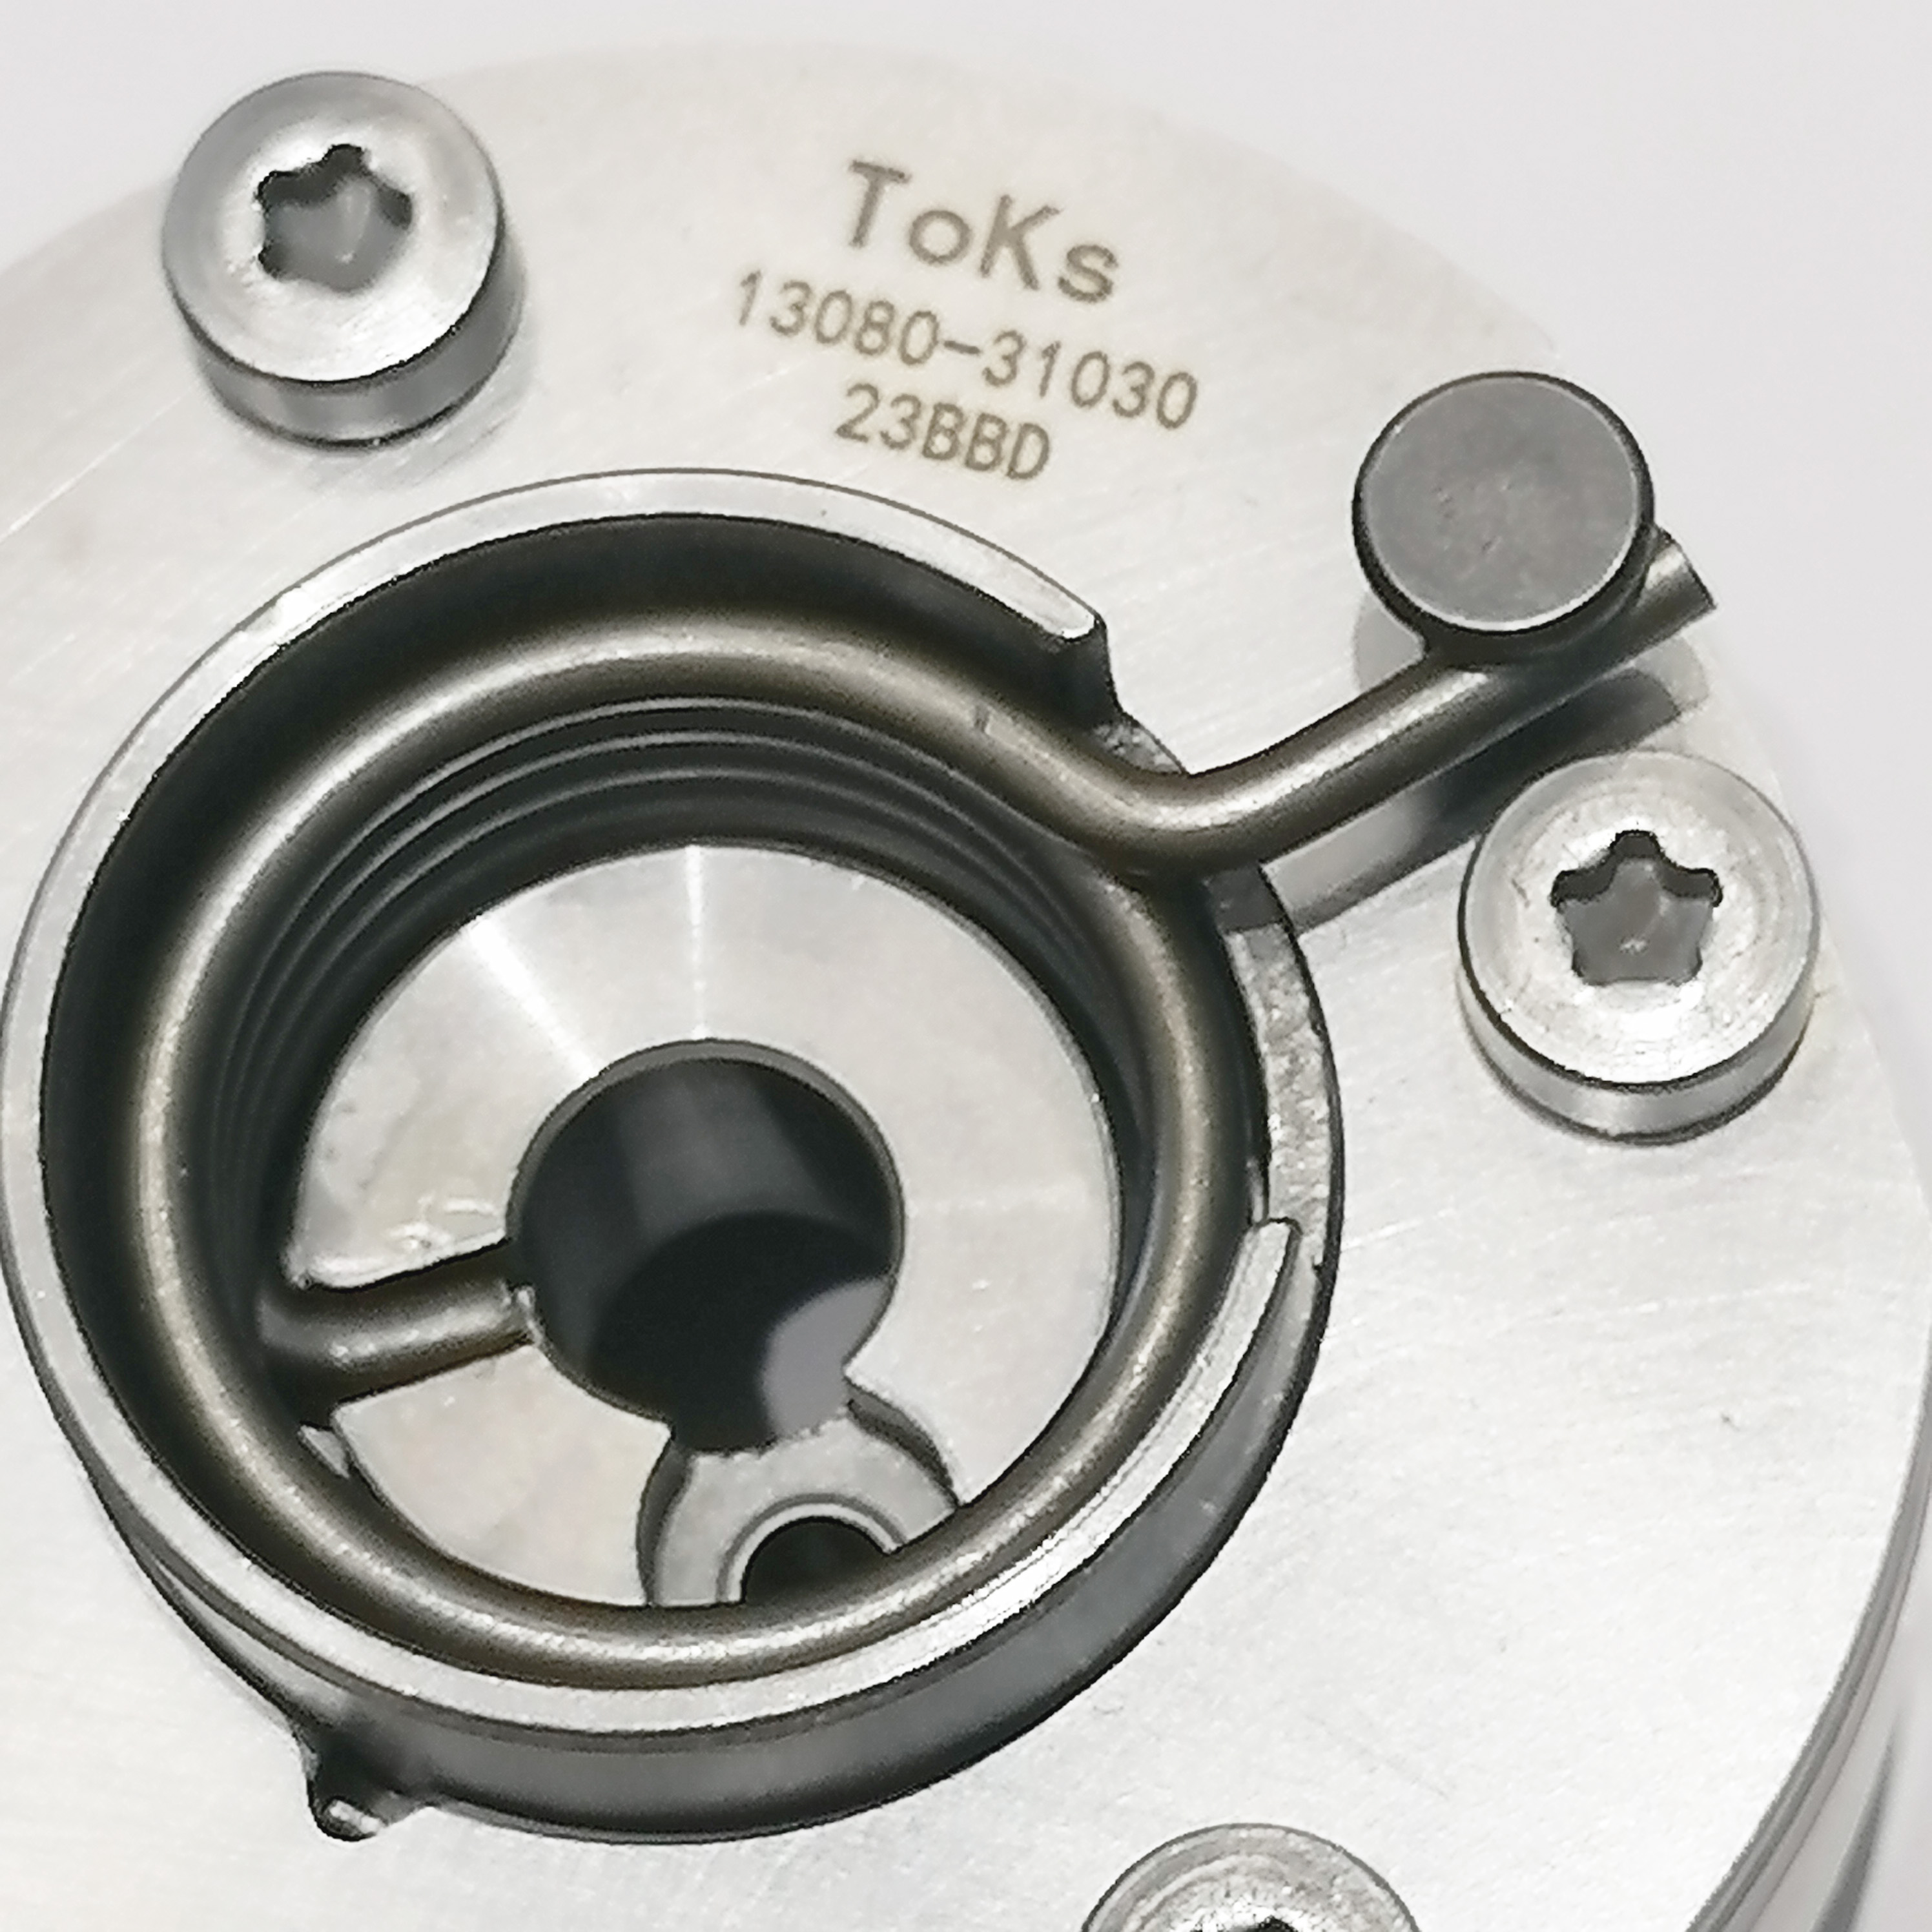 High quality auto parts Engine Timing Camshaft Sprocket VVT camshaft for toyota 2GR-FE 3GR-FSE & 4GR-FSE  OEM # 13080-31030